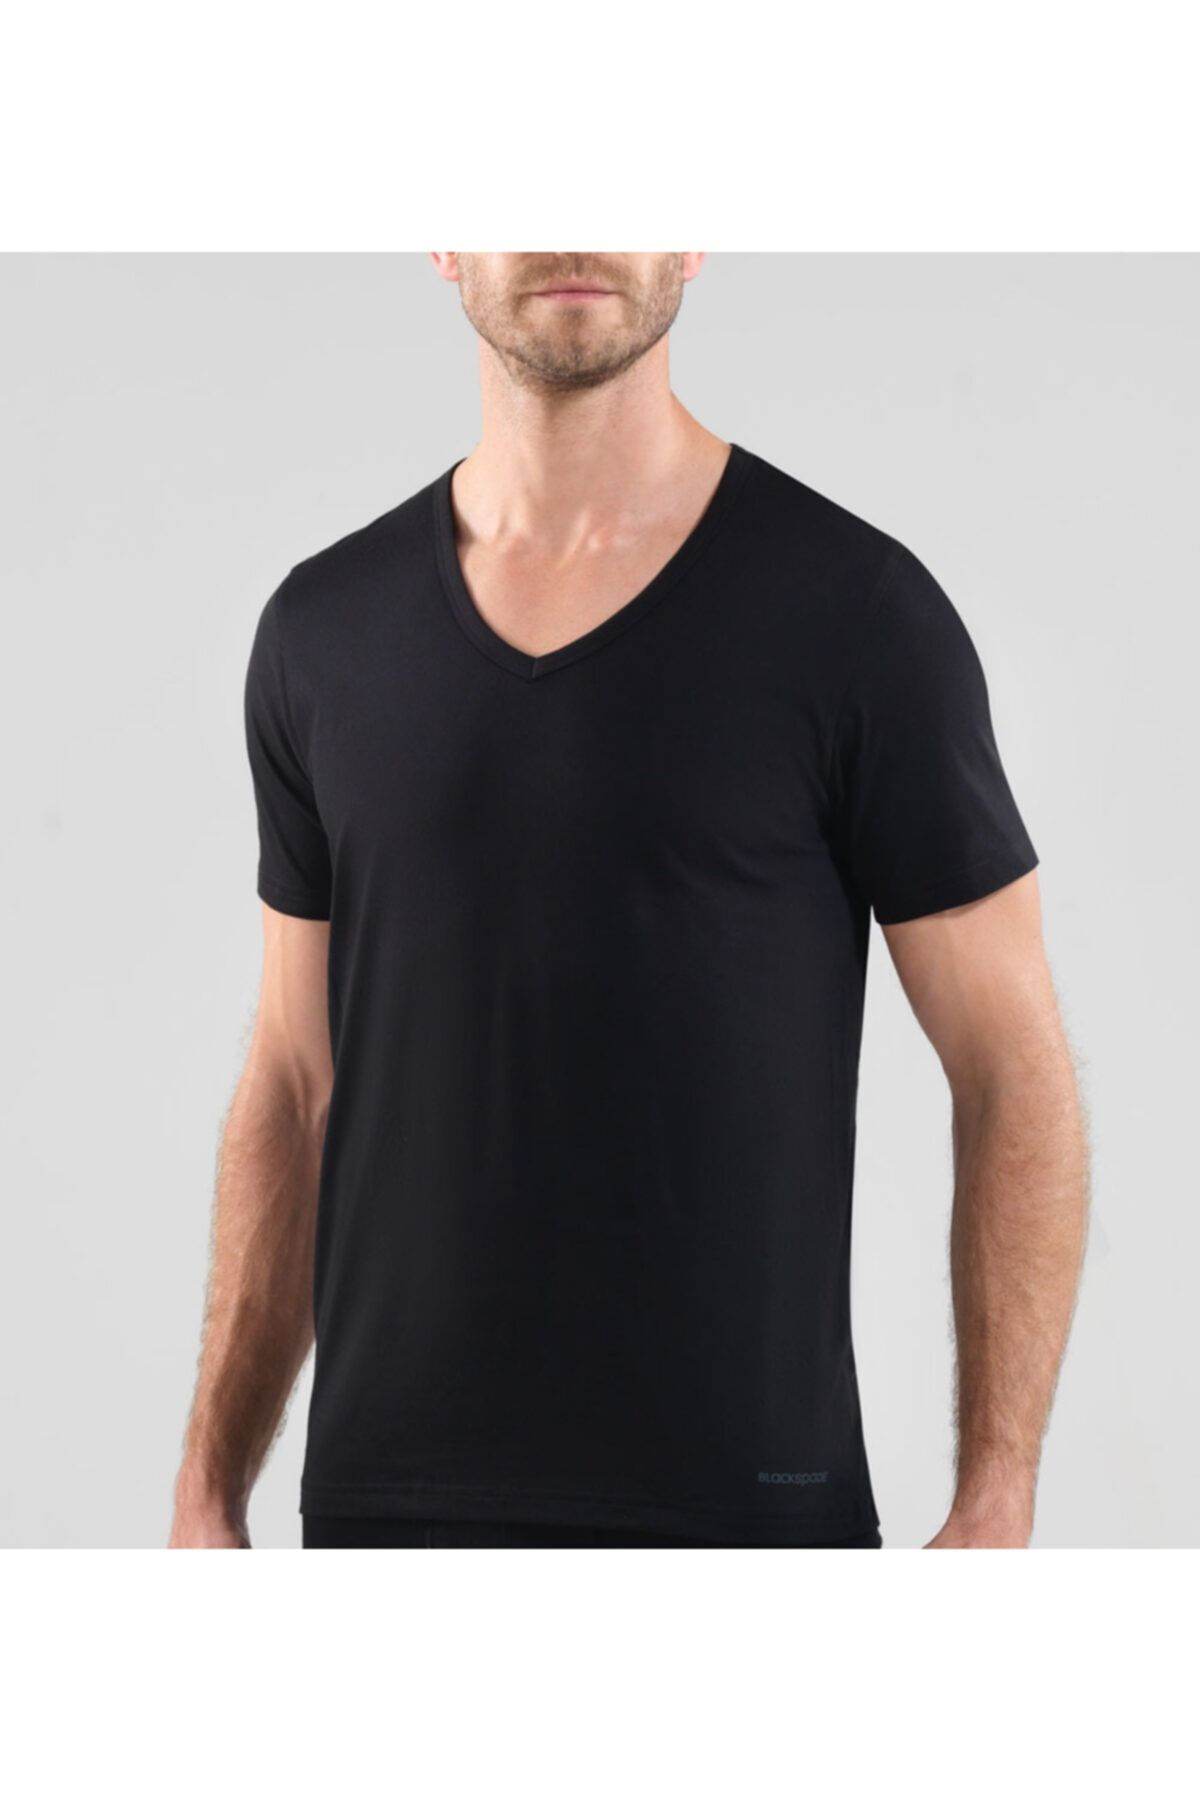 Blackspade V Neck T-shirt